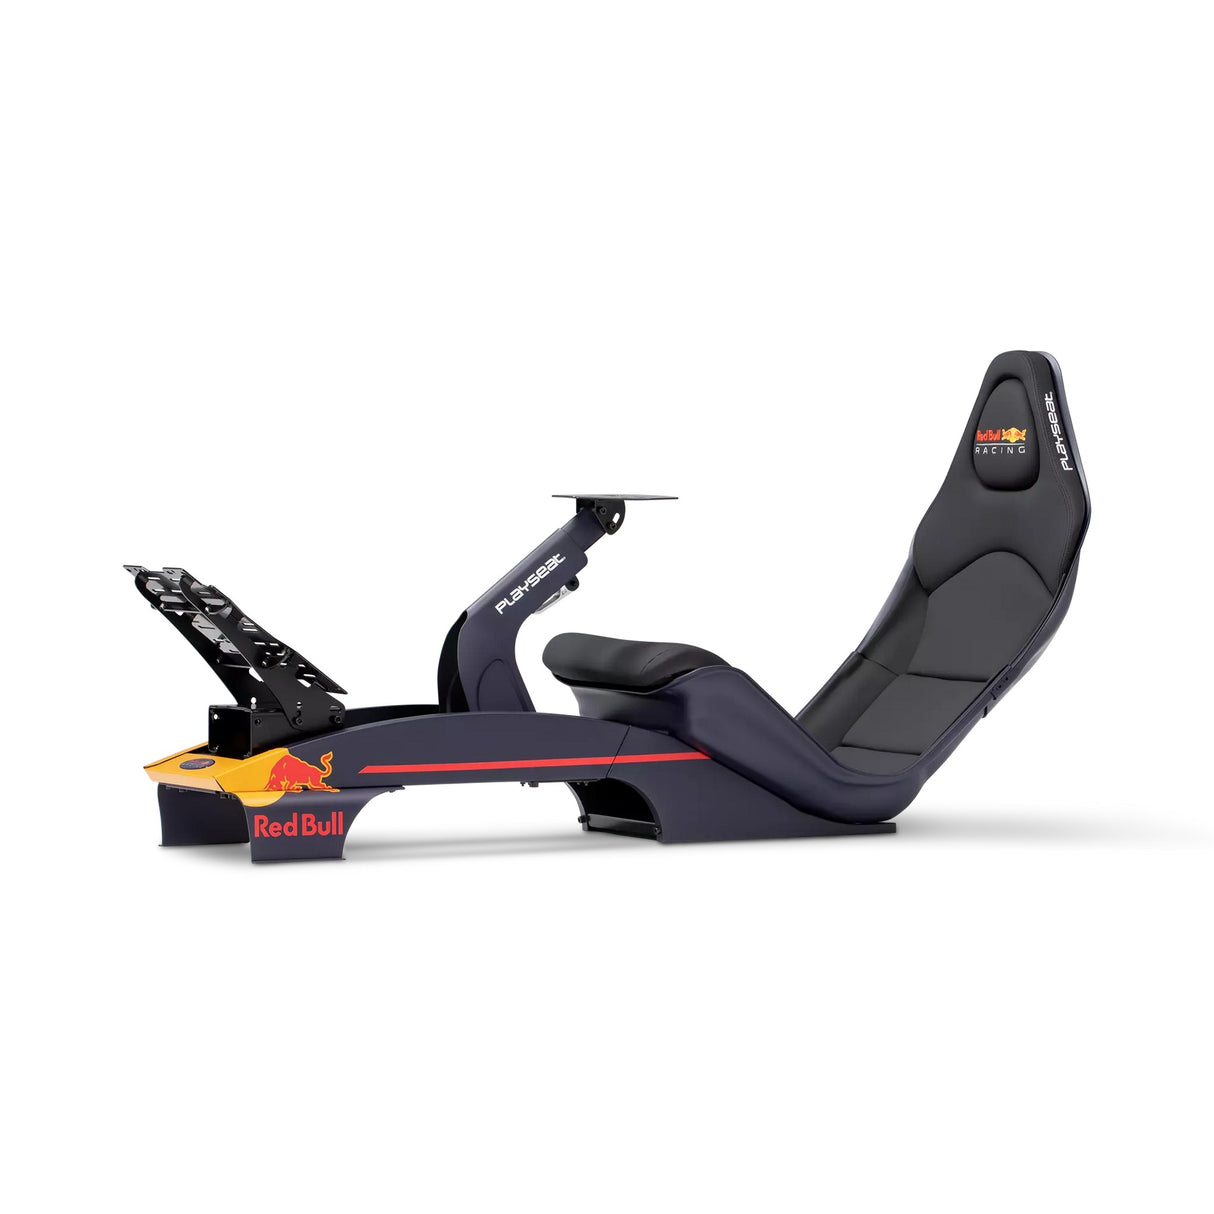 Playseat Formula Gaming Racing Seat, Red Bull Racing Edition